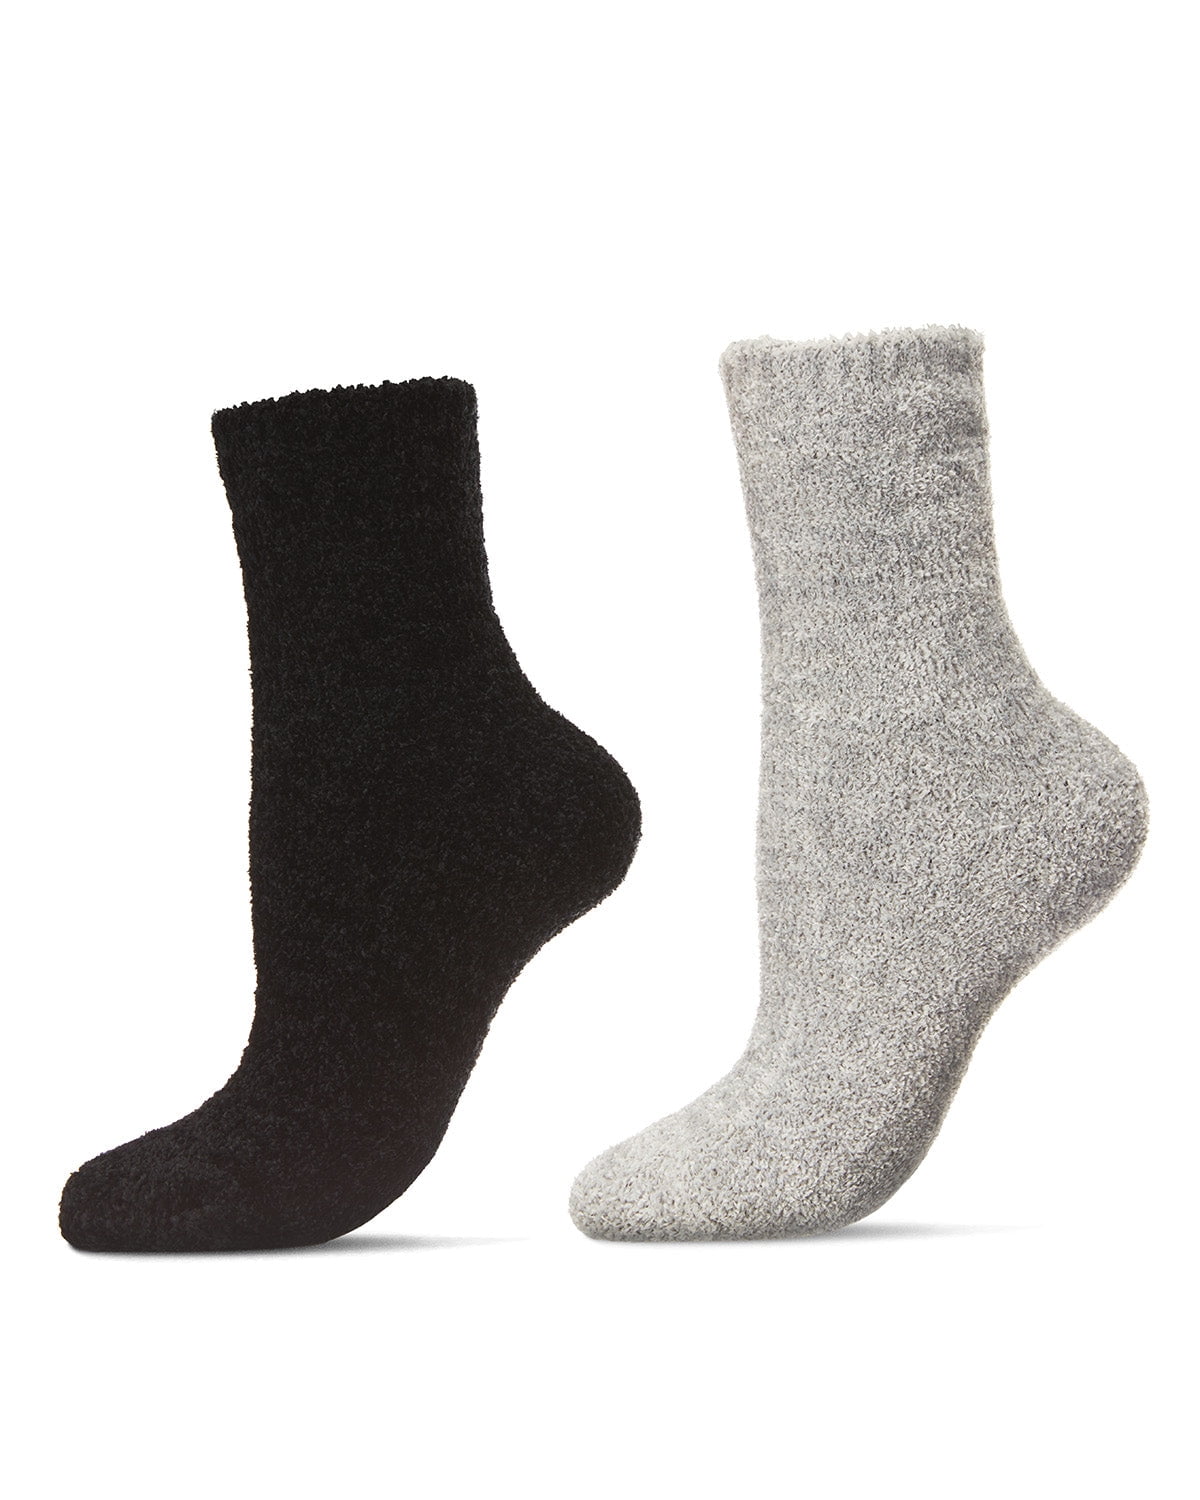 Feideer Socks